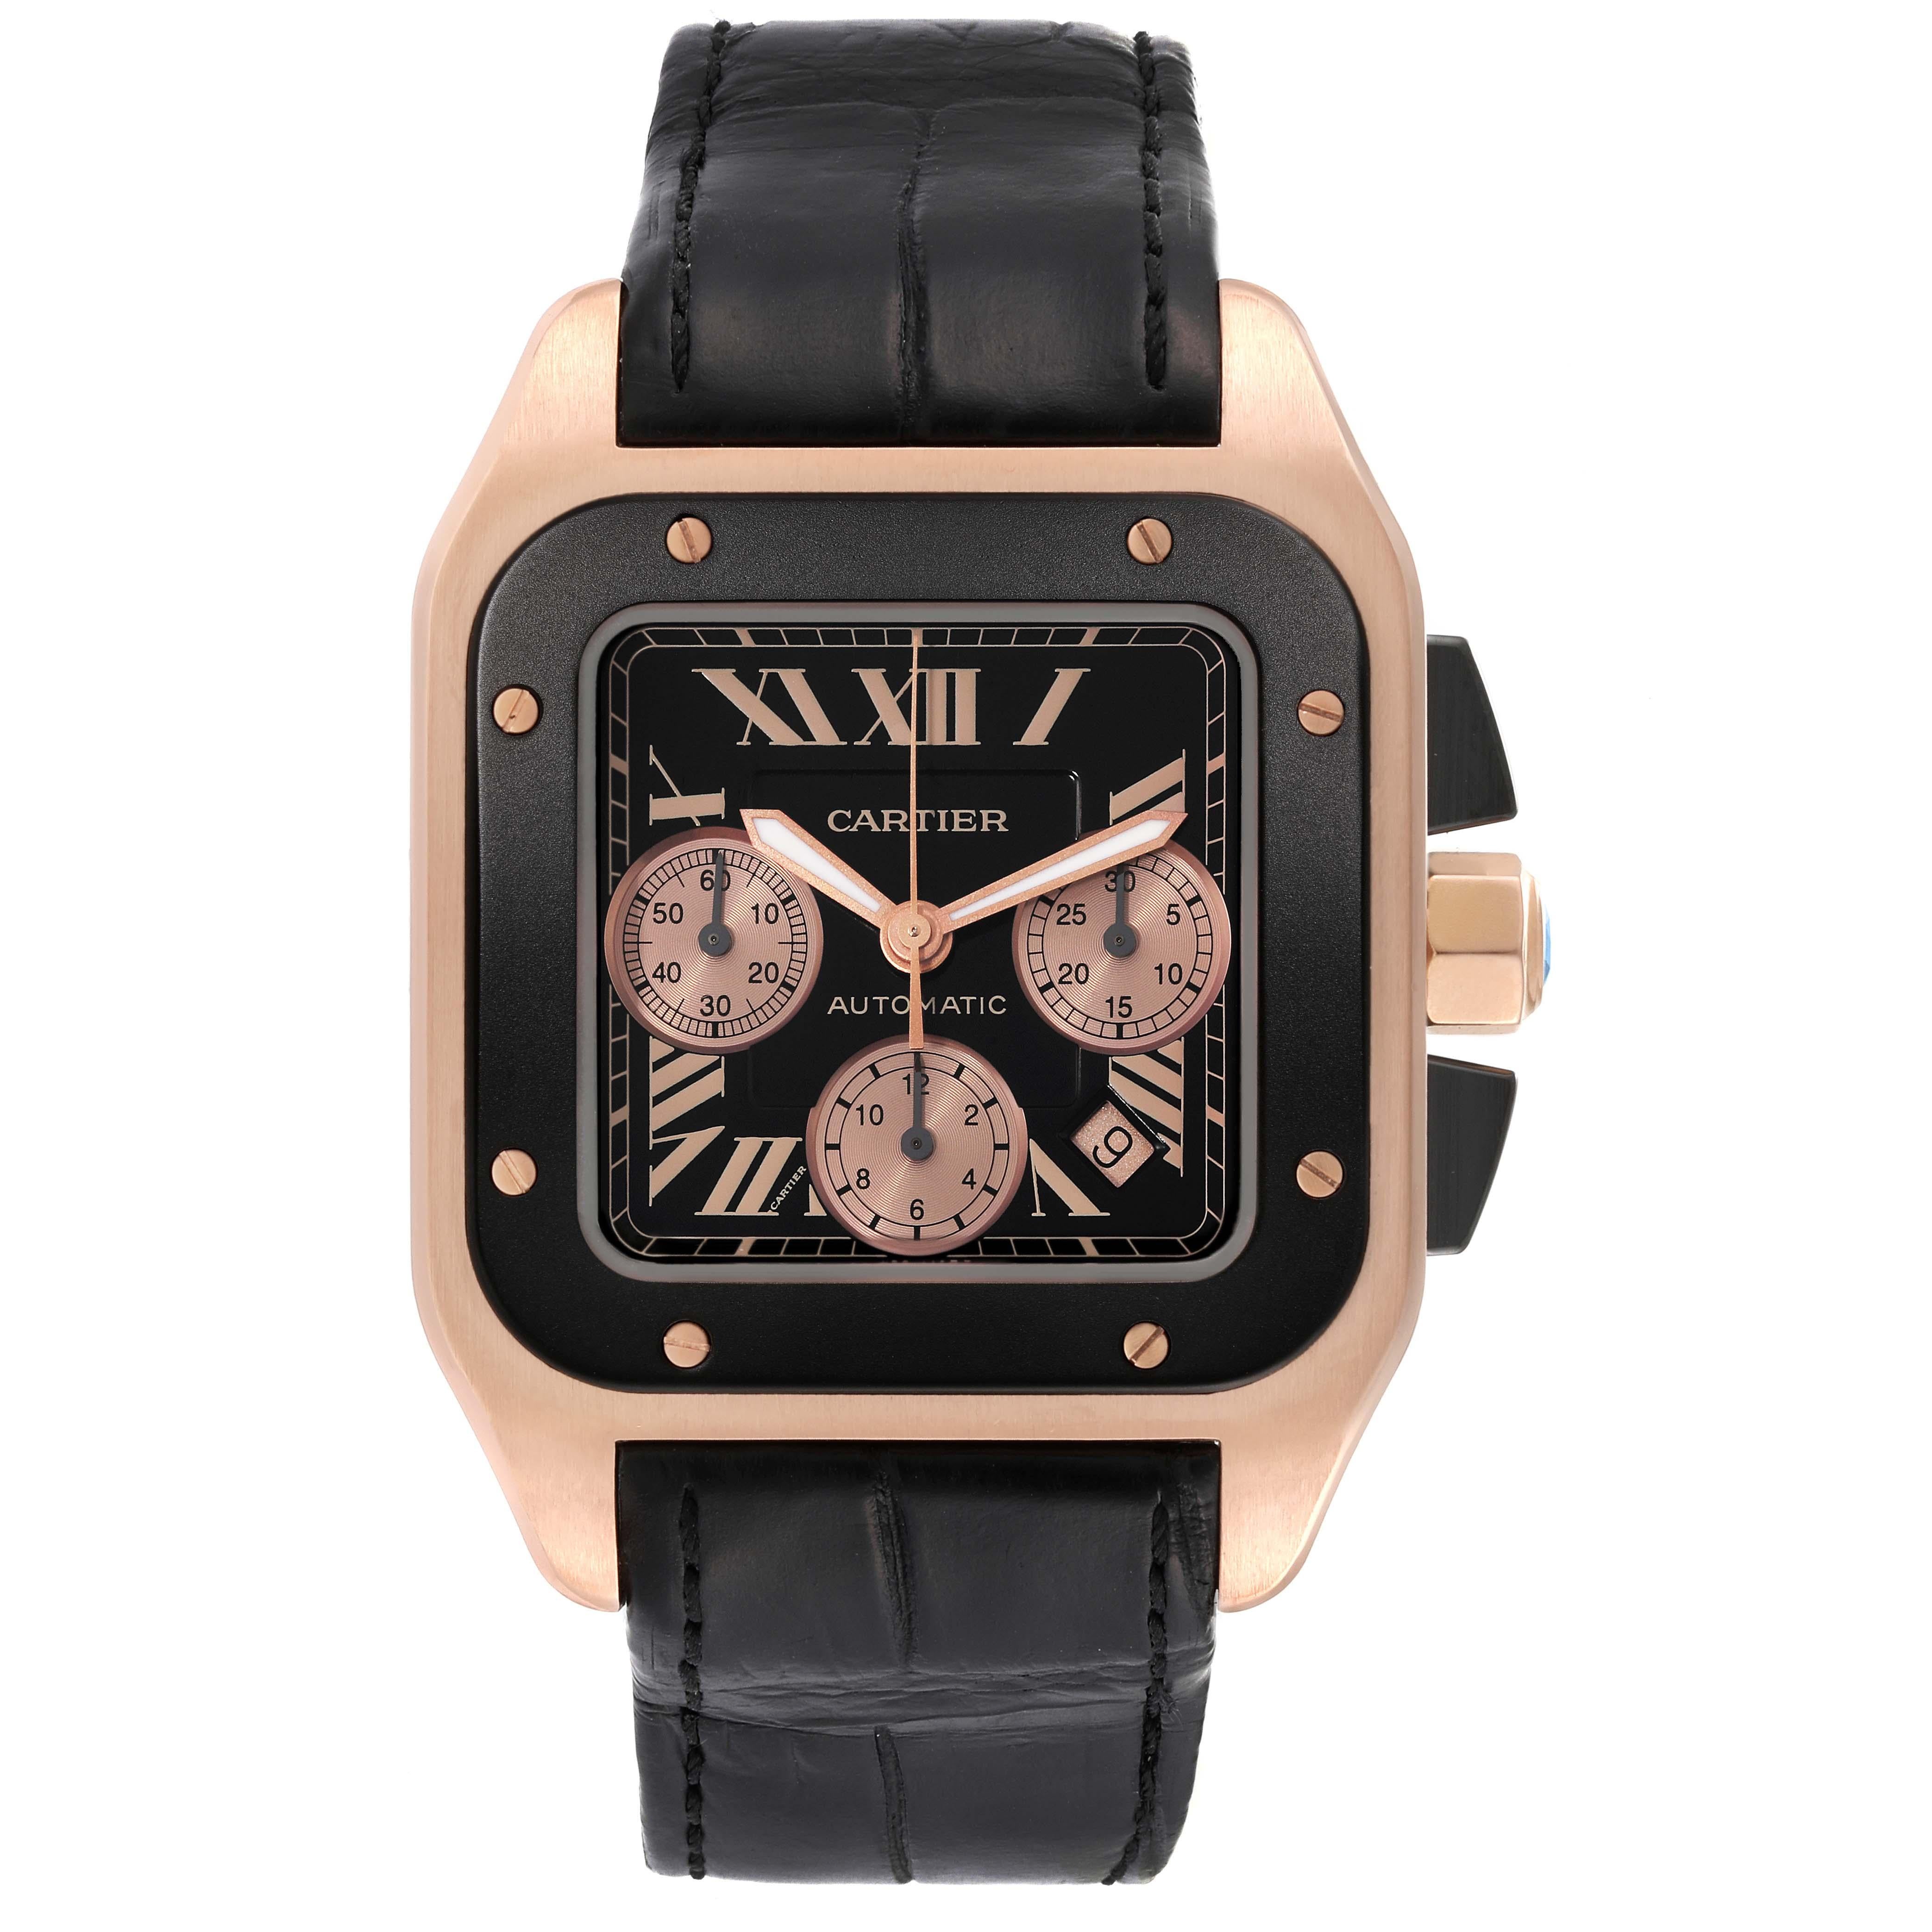 Cartier Santos 100 XL Rose Gold Chronograph Herrenuhr W2020003. Automatisches Uhrwerk mit Selbstaufzug. Gehäuse aus Roségold mit drei Gehäuseteilen, 54,9 mm x 46,55 mm. Achteckige Krone, besetzt mit schwarzem, facettiertem Spinell. Schwarze